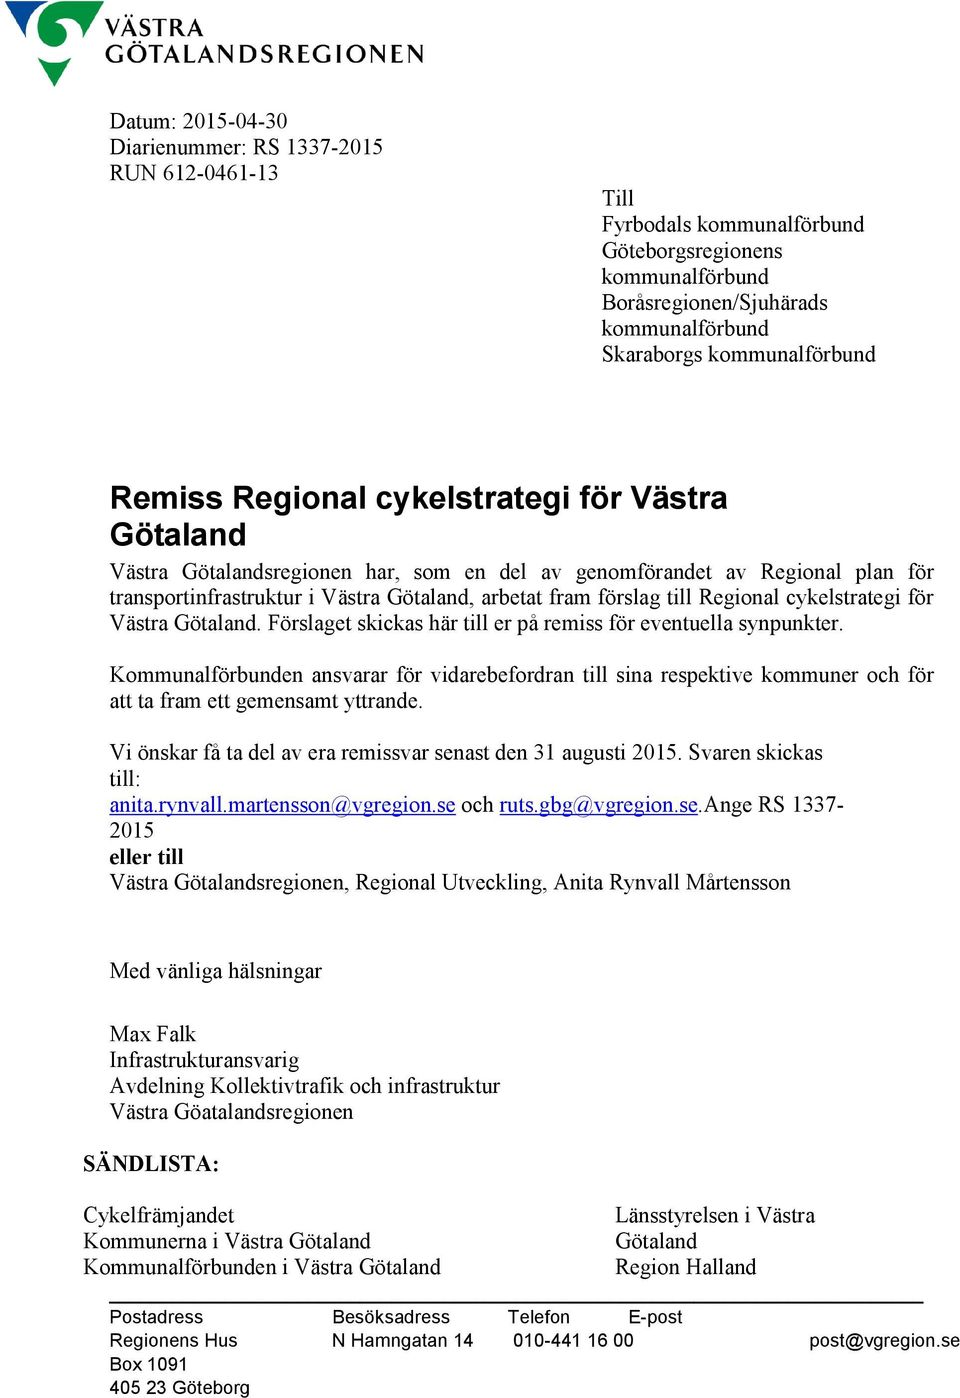 Regional cykelstrategi för Västra Götaland. Förslaget skickas här till er på remiss för eventuella synpunkter.